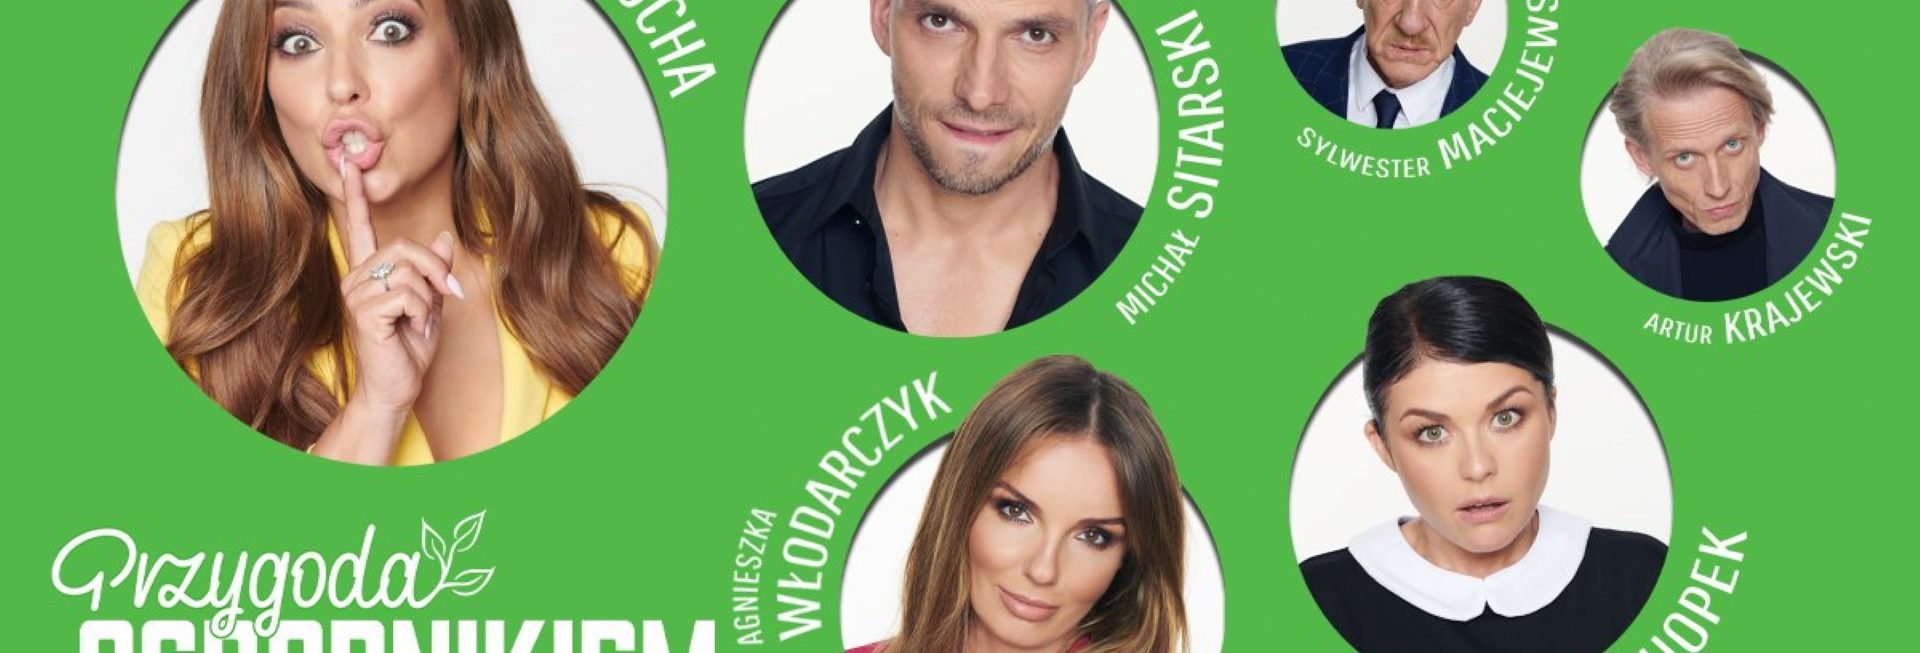 Plakat graficzny zapraszający do Olsztyna na spektakl komediowy "Przygoda z ogrodnikiem" - Olsztyn 2021. Na plakacie sześć zdjęć aktorów występujących podczas przedstawienia.    